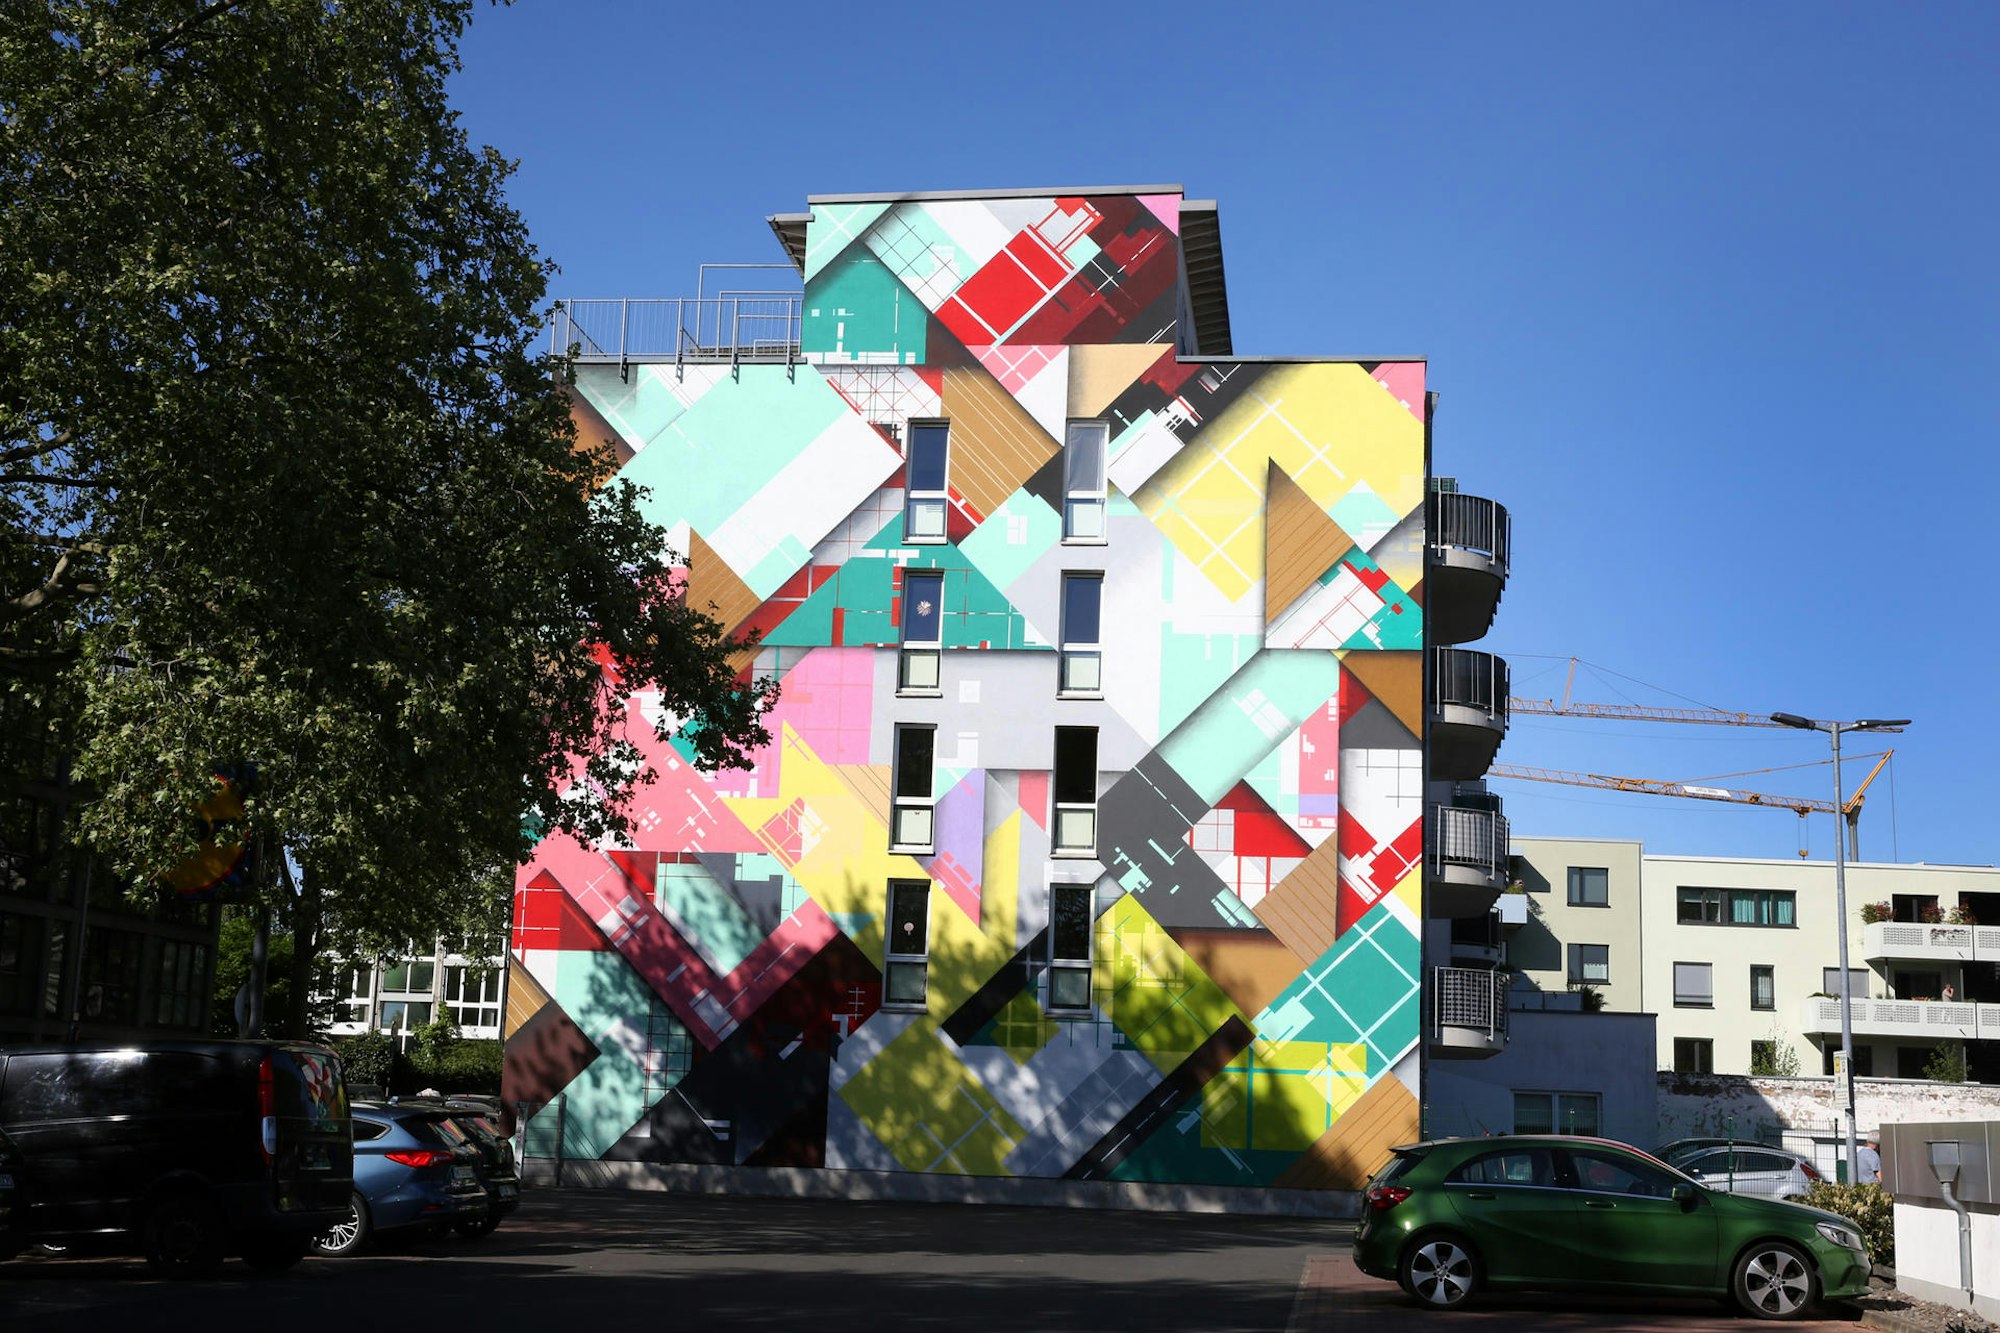 Nicht-kommerzielle Kunst in Ehrenfeld: Eine Arbeit des Künstlers Zedz aus Amsterdam, entstanden 2019 beim Cityleaks-Festival